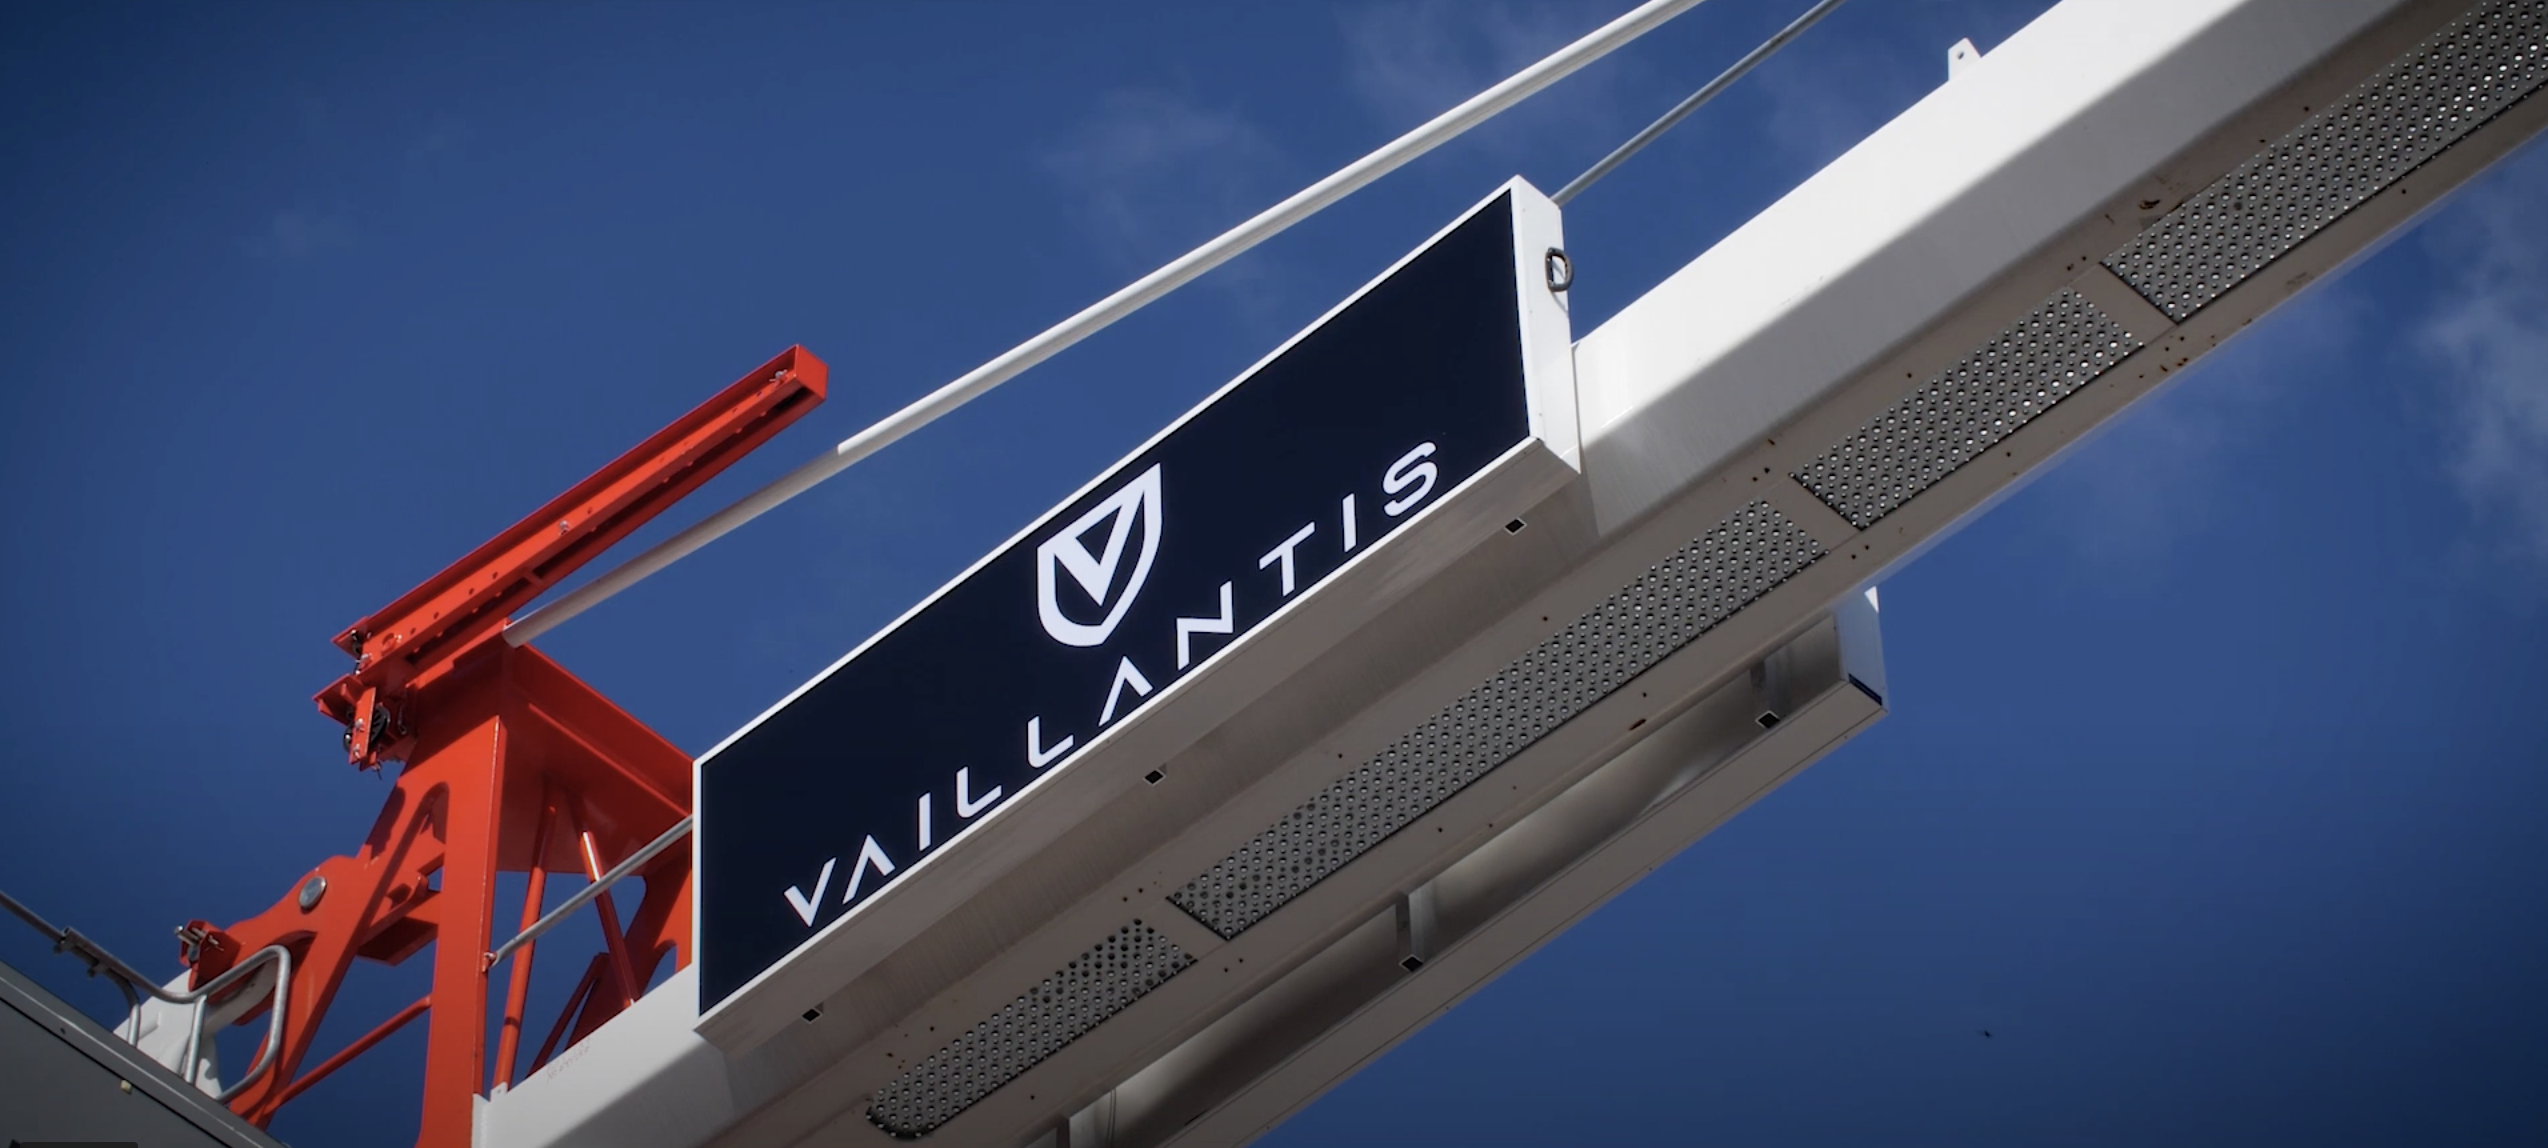 Panneau lumineux Grue : l'entreprise Vaillantis voit grand avec LightAir